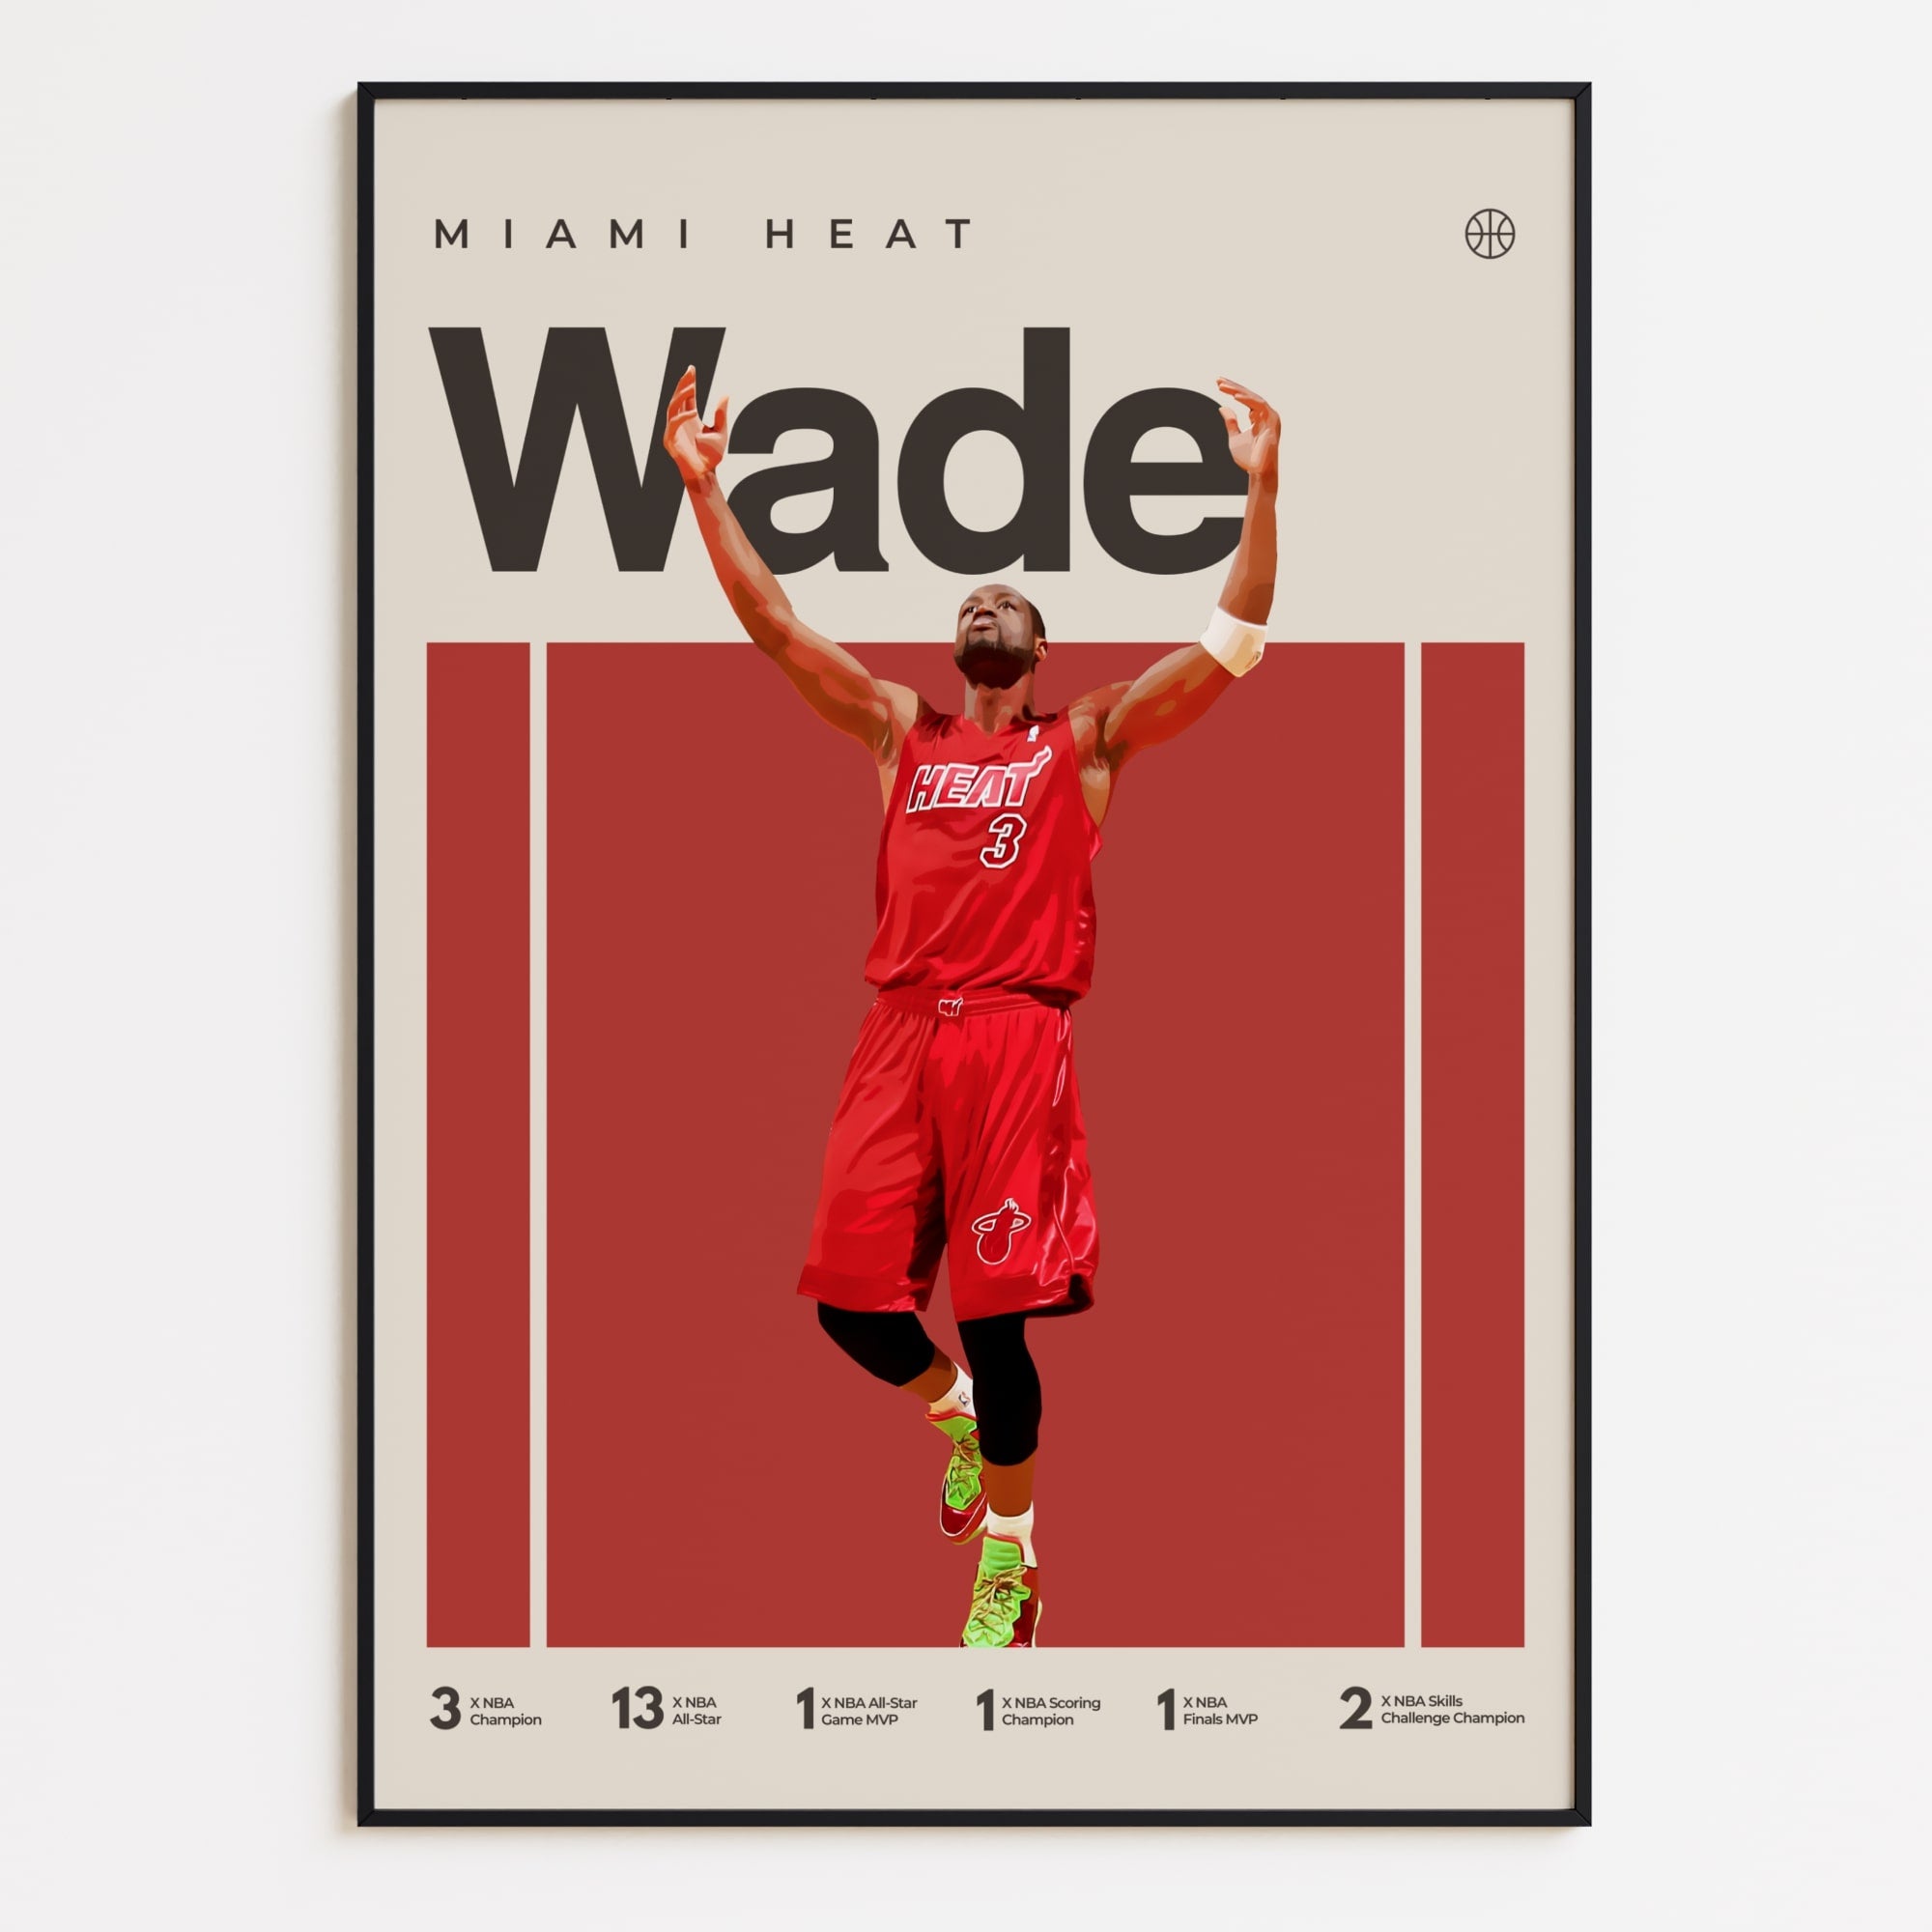 Dwayne Wade Poster, Miami Heat